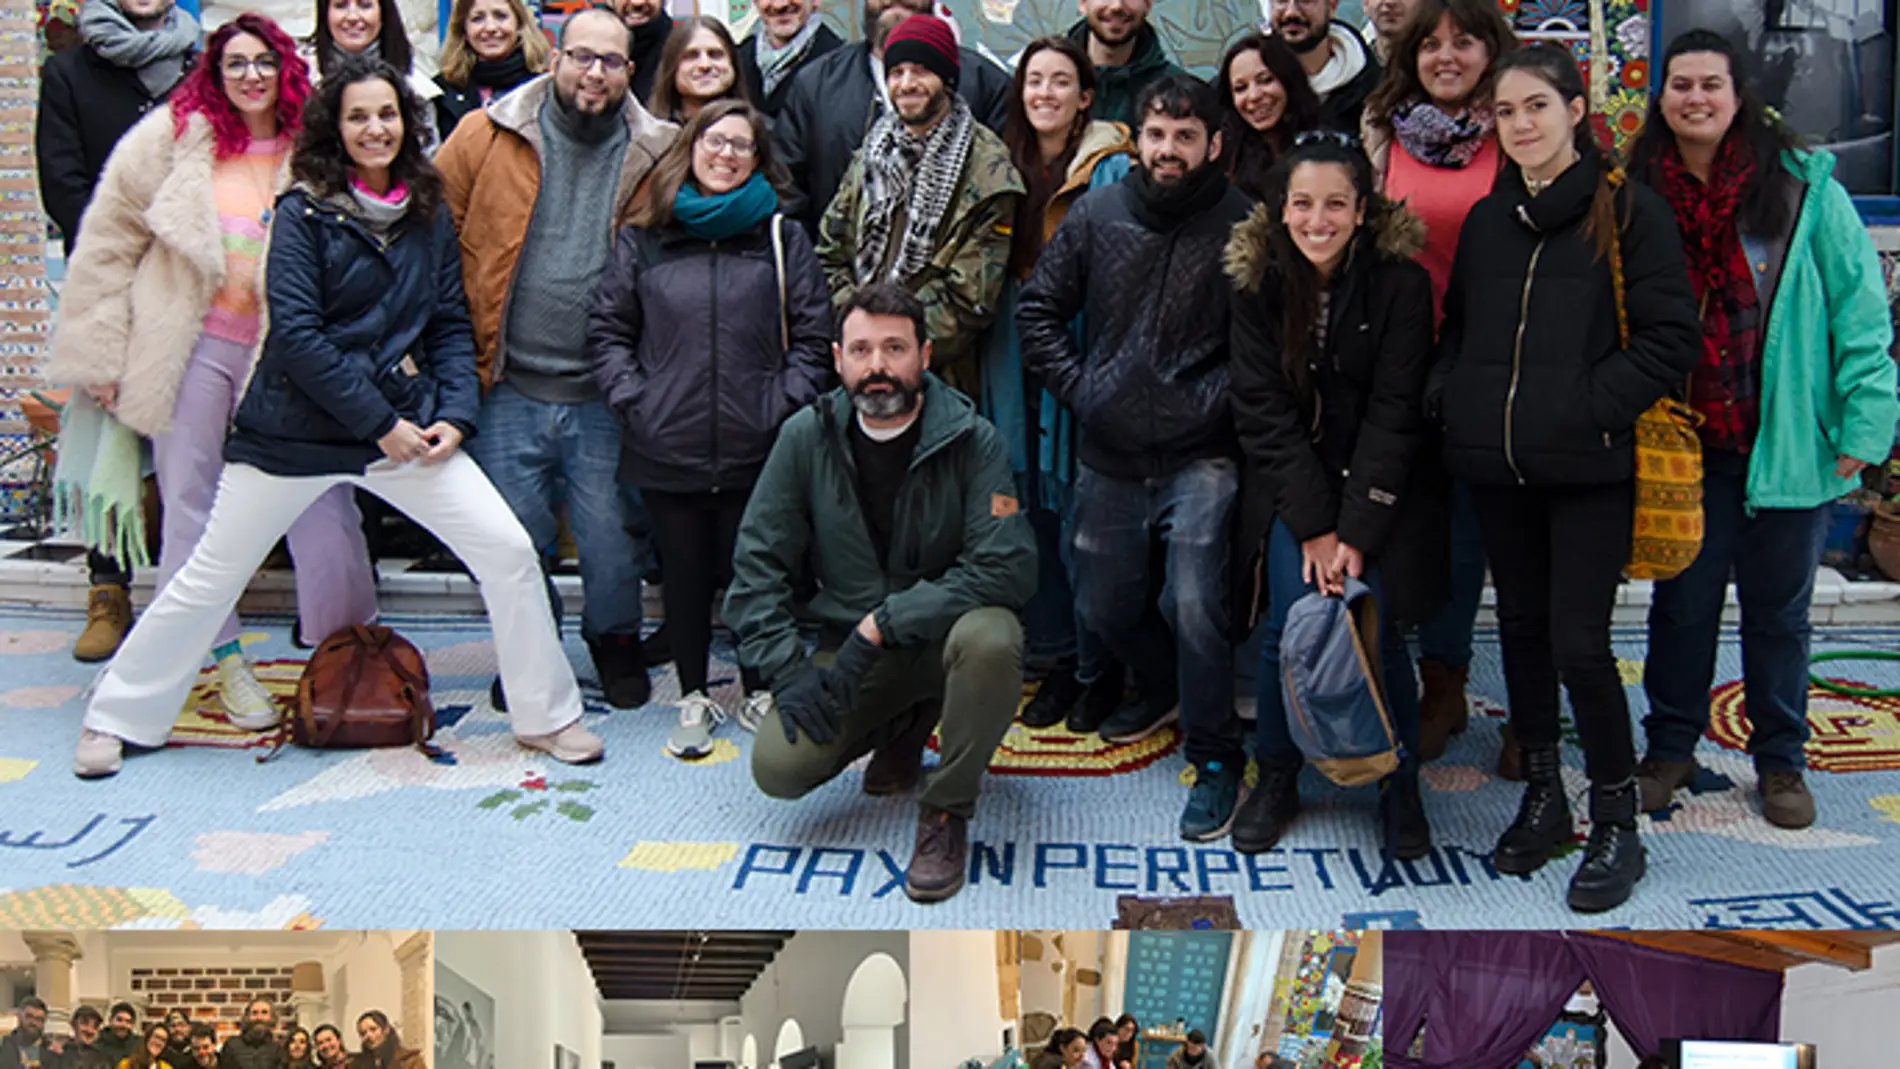 La Casa Azul organiza en FADAC el primer Encuentro Andaluz de Jóvenes Artistas y Emprendedores del Sector Artístico-Cultural